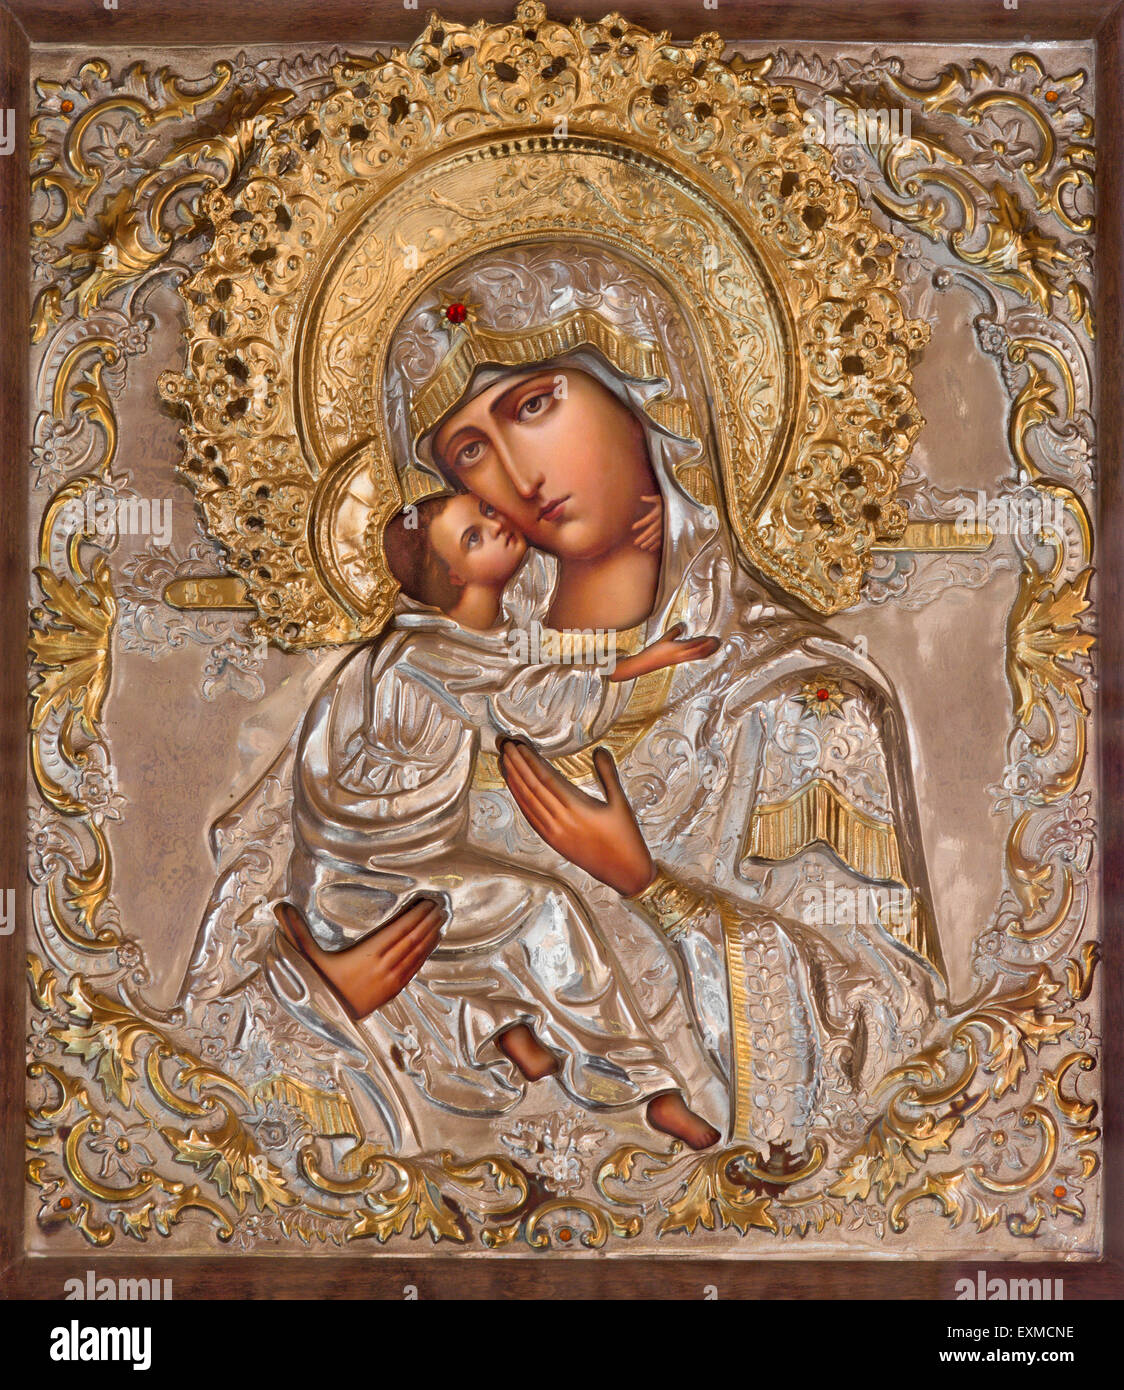 Gerusalemme, Israele - 5 Marzo 2015: l'icona della Madonna nella chiesa ortodossa russa di Santa Maria di Magdala Di artista sconosciuto Foto Stock